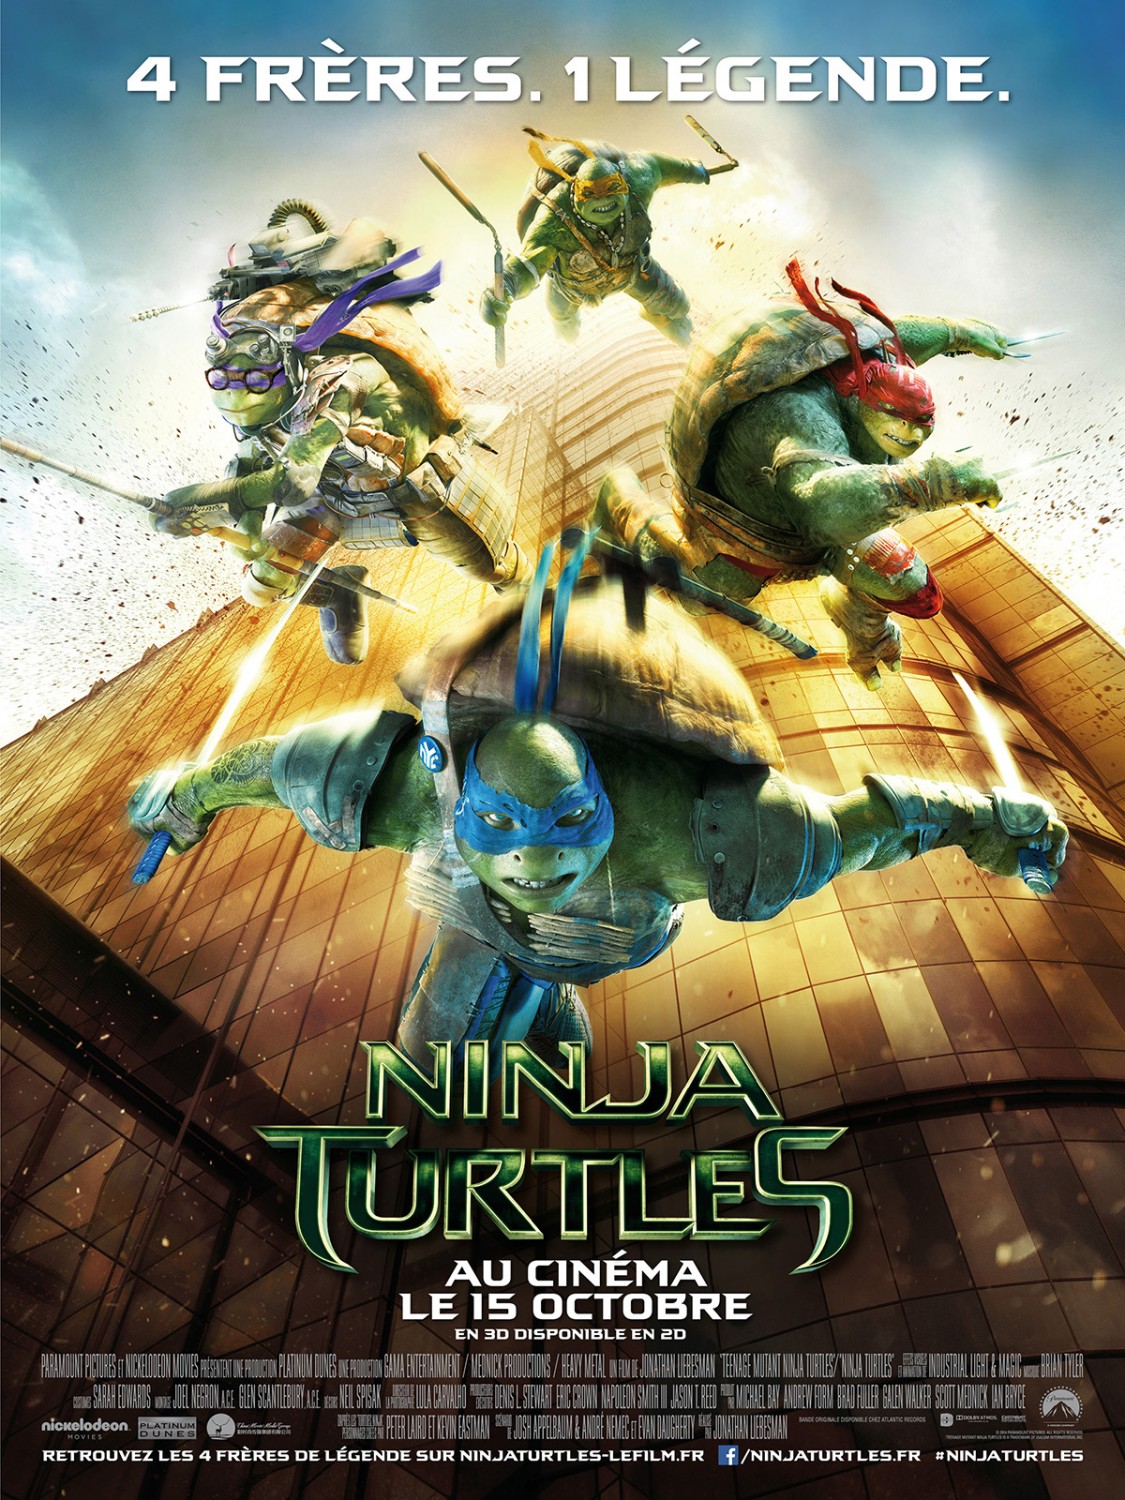 Extra Large Movie Poster Image for Teenage Mutant Ninja Turtles (#22 of 22)